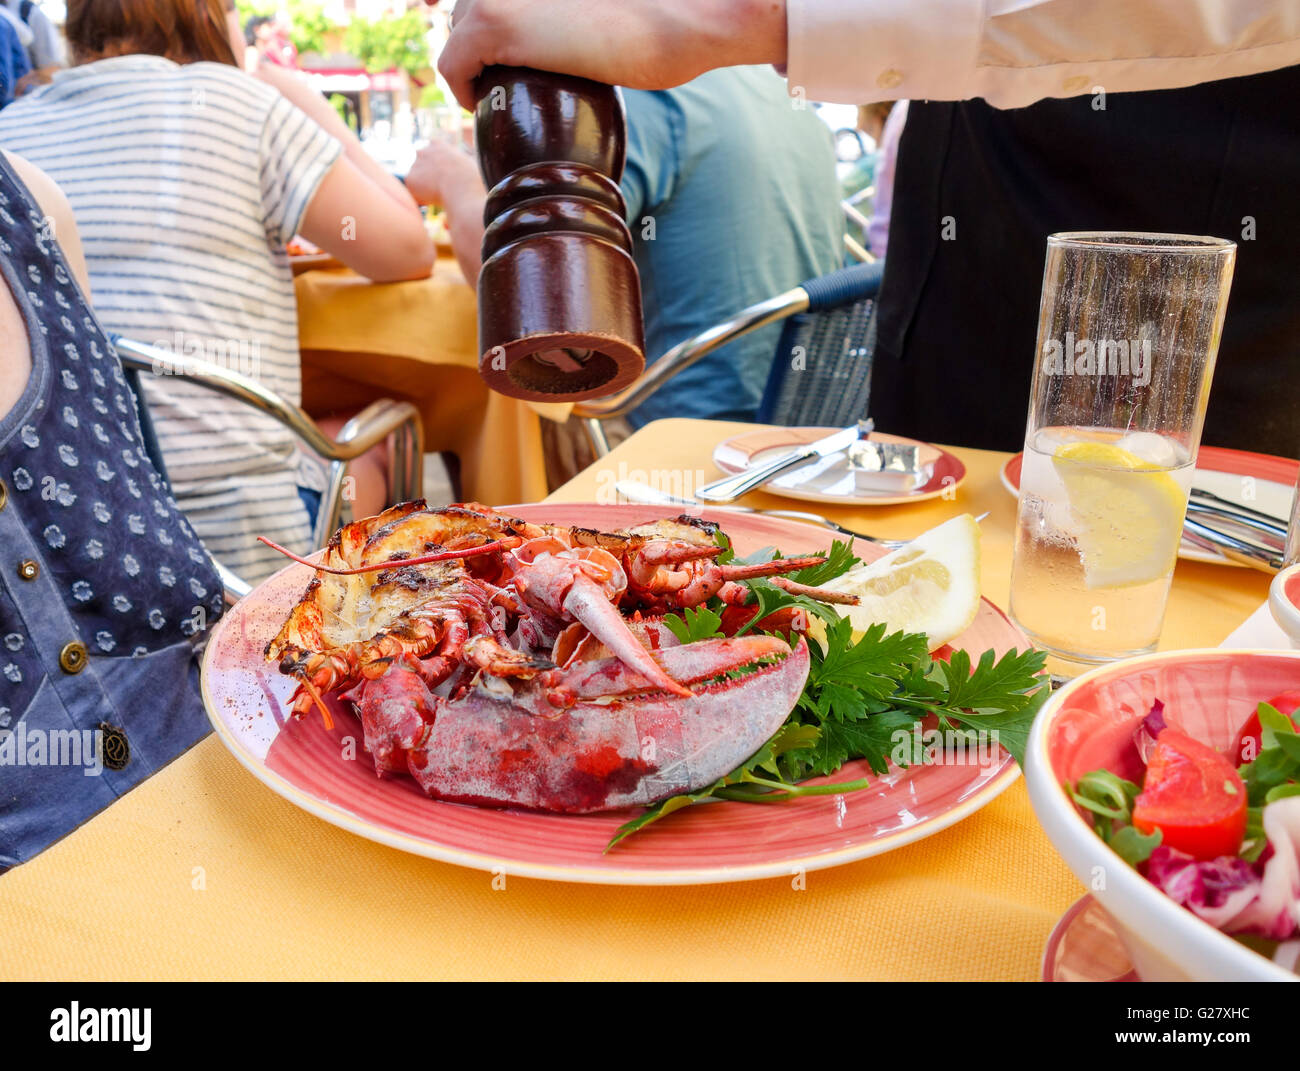 Un dîner de homard d'être saupoudré de poivre noir à partir d'un moulin à poivre servi dehors à la terrasse d'un café restaurant Banque D'Images